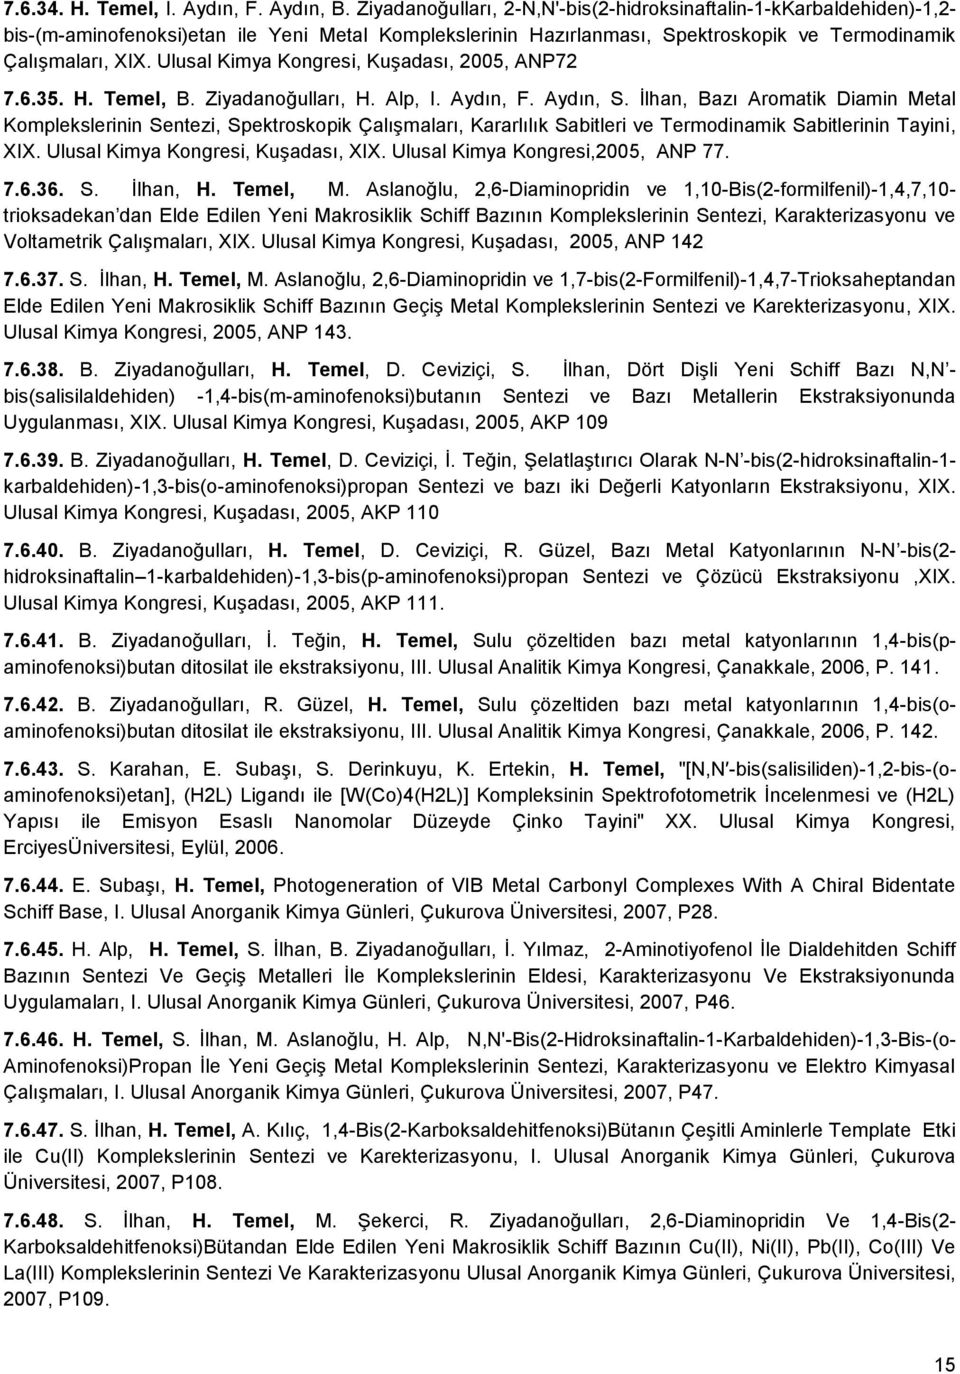 Ulusal Kimya Kongresi, Kuşadası, 2005, ANP72 7.6.35. H. Temel, B. Ziyadanoğulları, H. Alp, I. Aydın, F. Aydın, S.